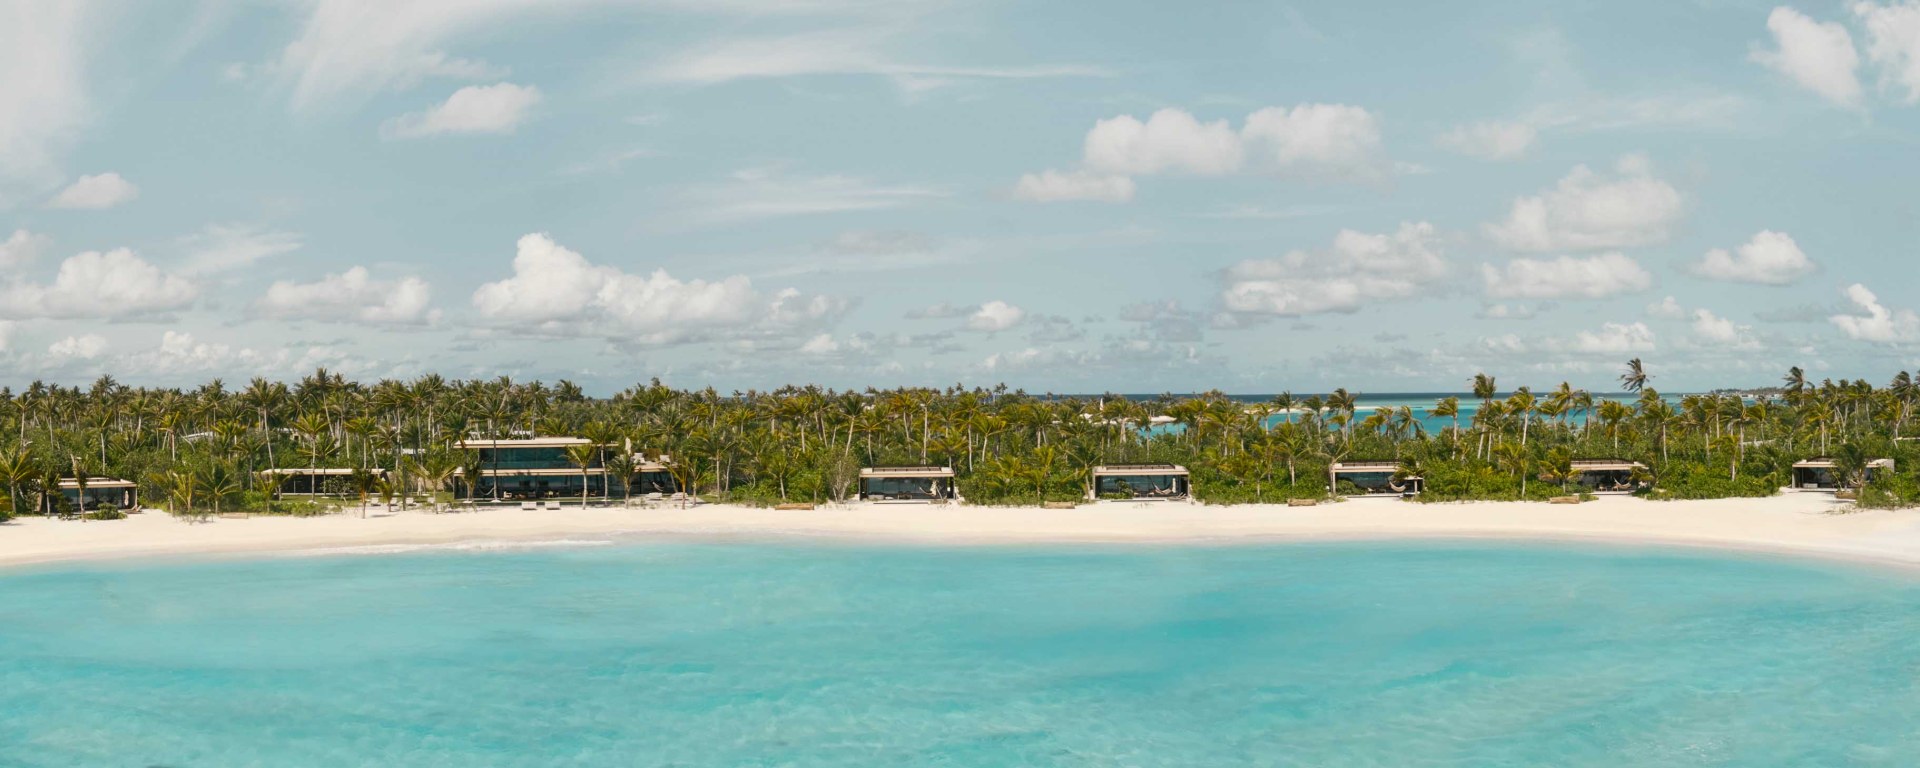 Luxushoteleroeffnung Malediven Patina Maldives